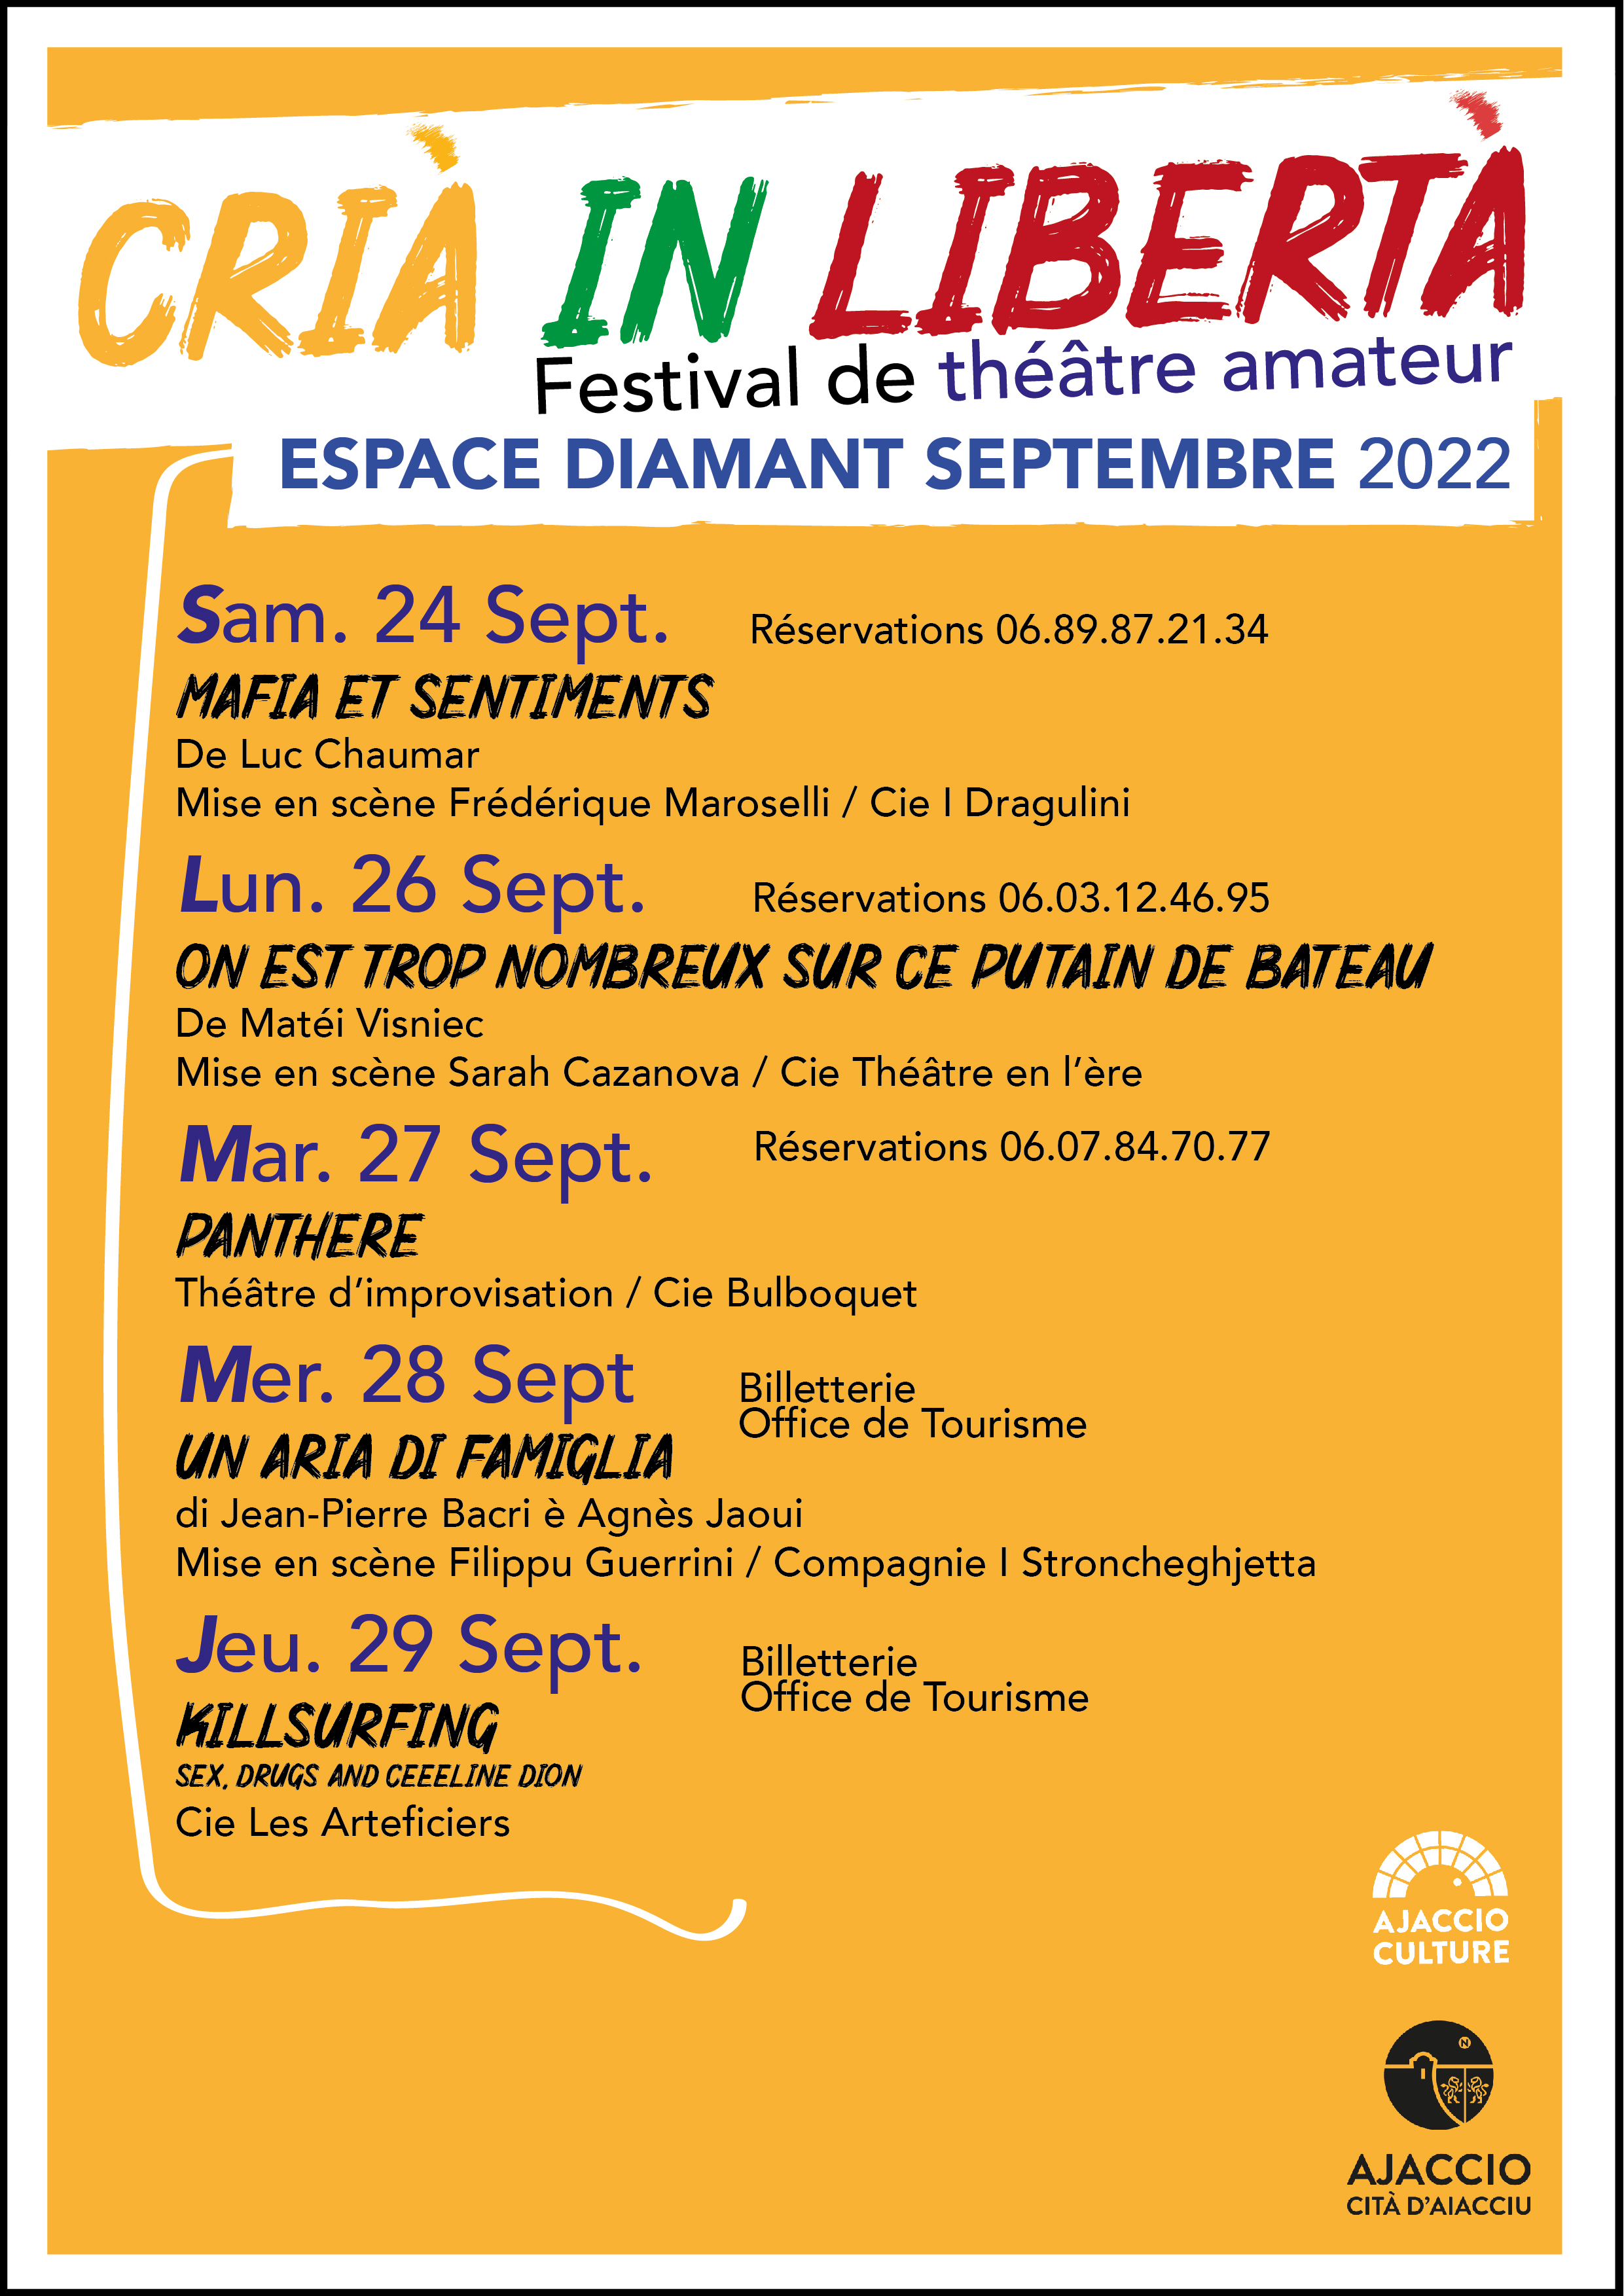 Festival de théâtre amateur / Crià in Liberta